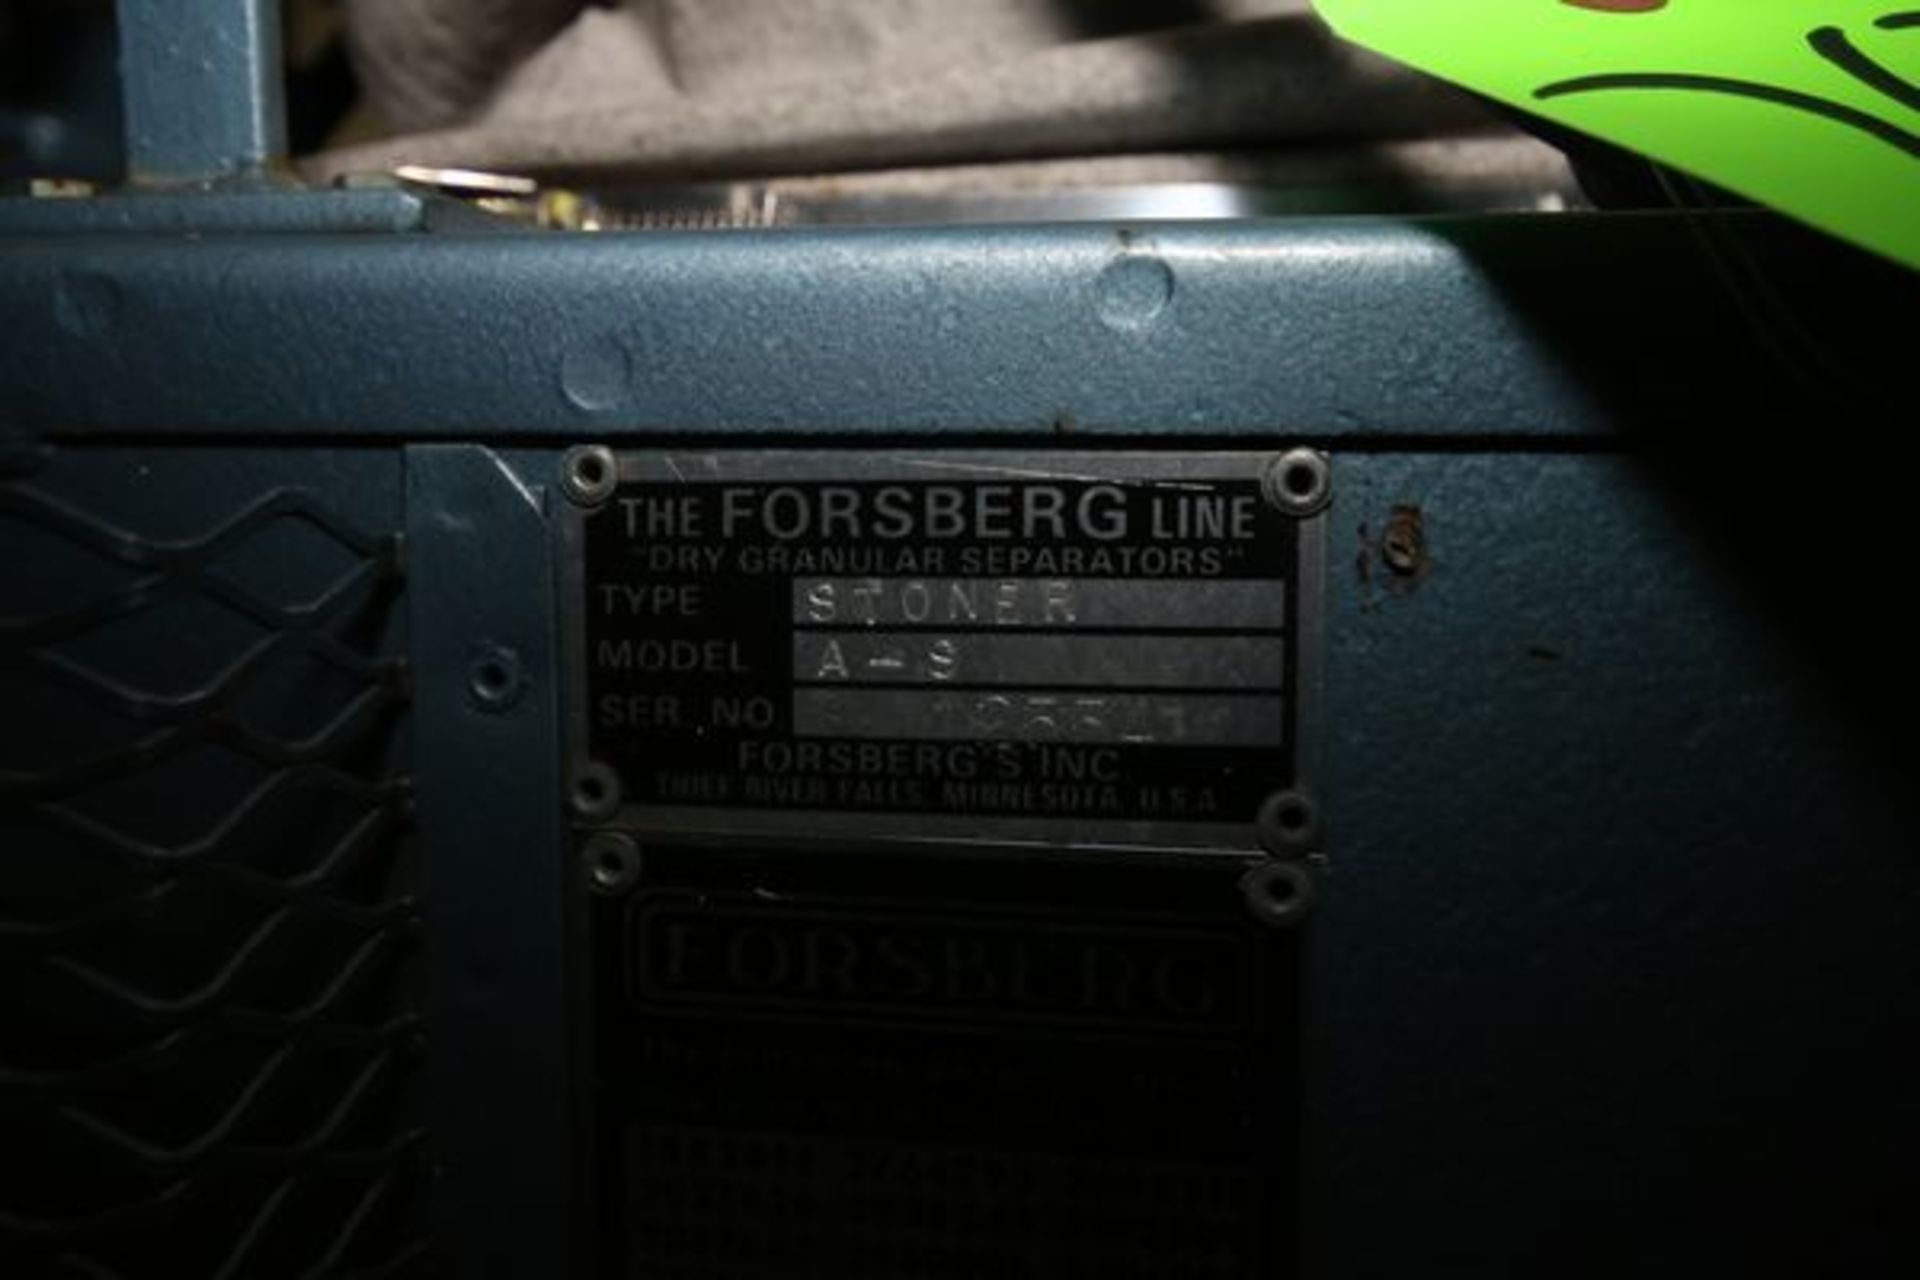 Foesber Dry Granular Separator, M/N A-S, S/N 12554, 19 In. L x 7 1/2 In. W - Image 2 of 3